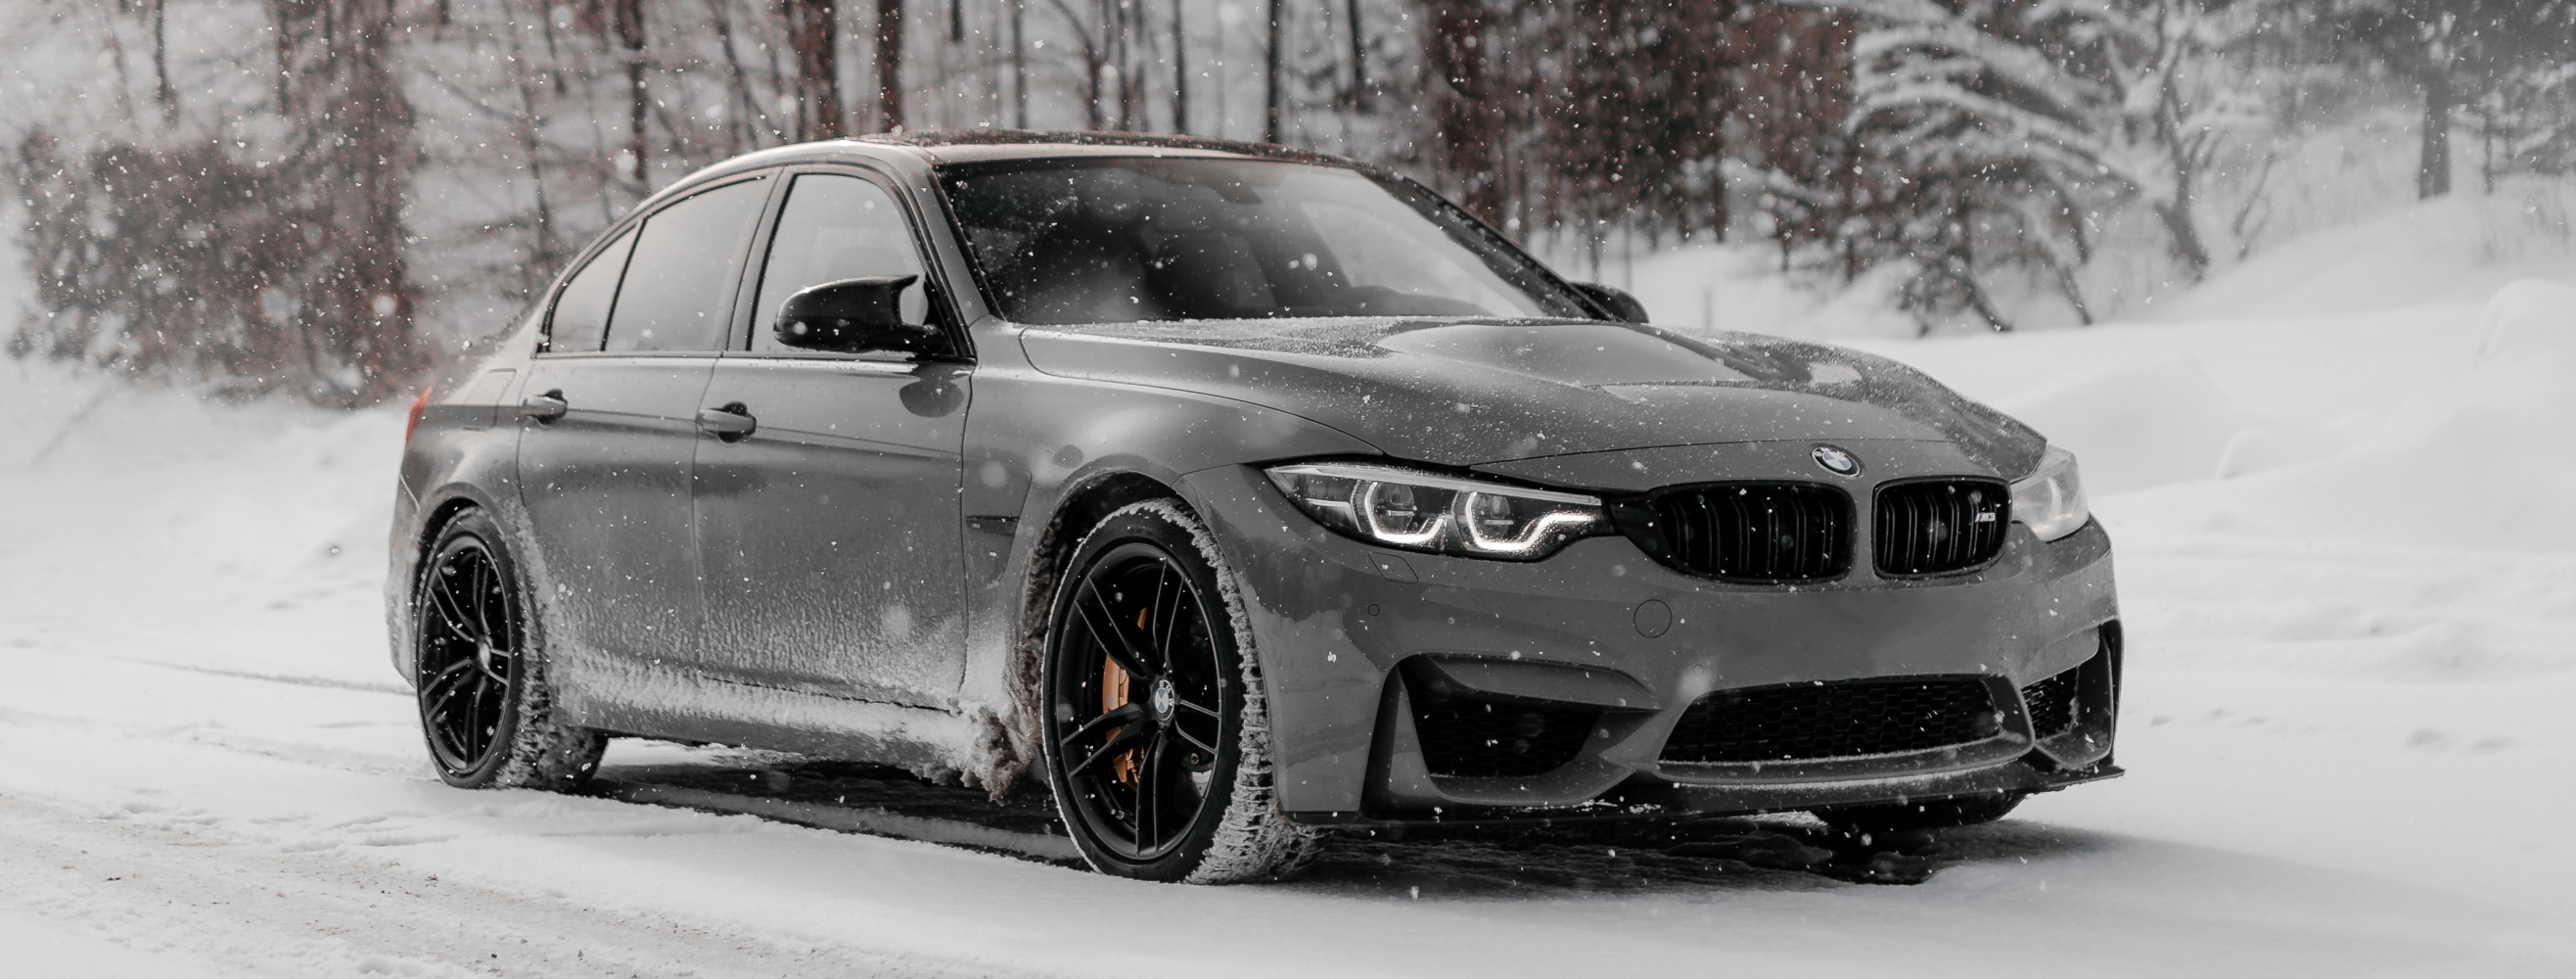 Samochód BMW w okresie zimy.